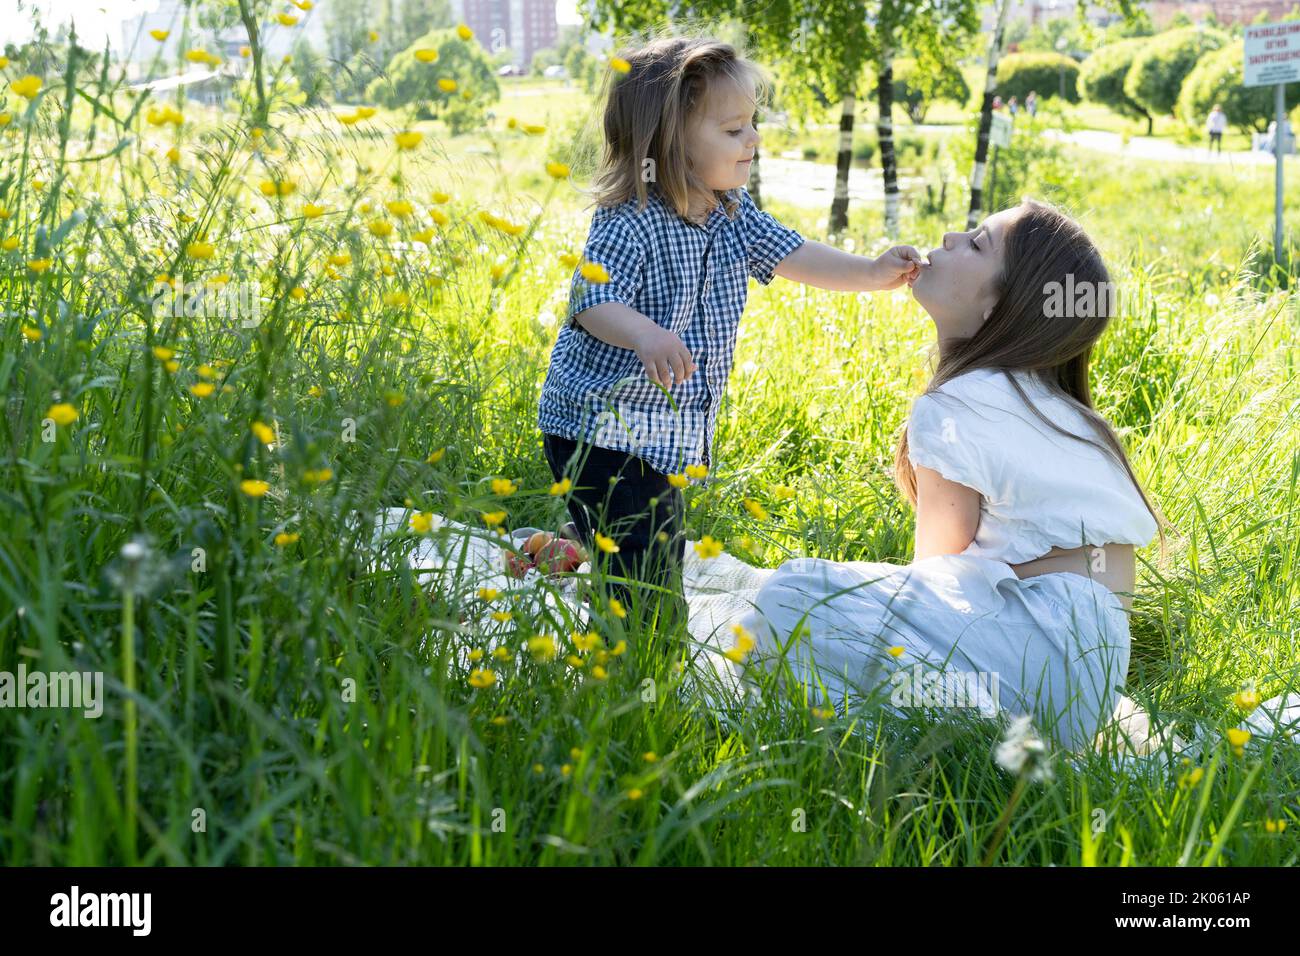 Bruder und Schwester spielen im Park inmitten des grünen Grases. Bruder füttert Schwester. Picknick außerhalb der Stadt. Kindheit. Beziehungen. Stockfoto